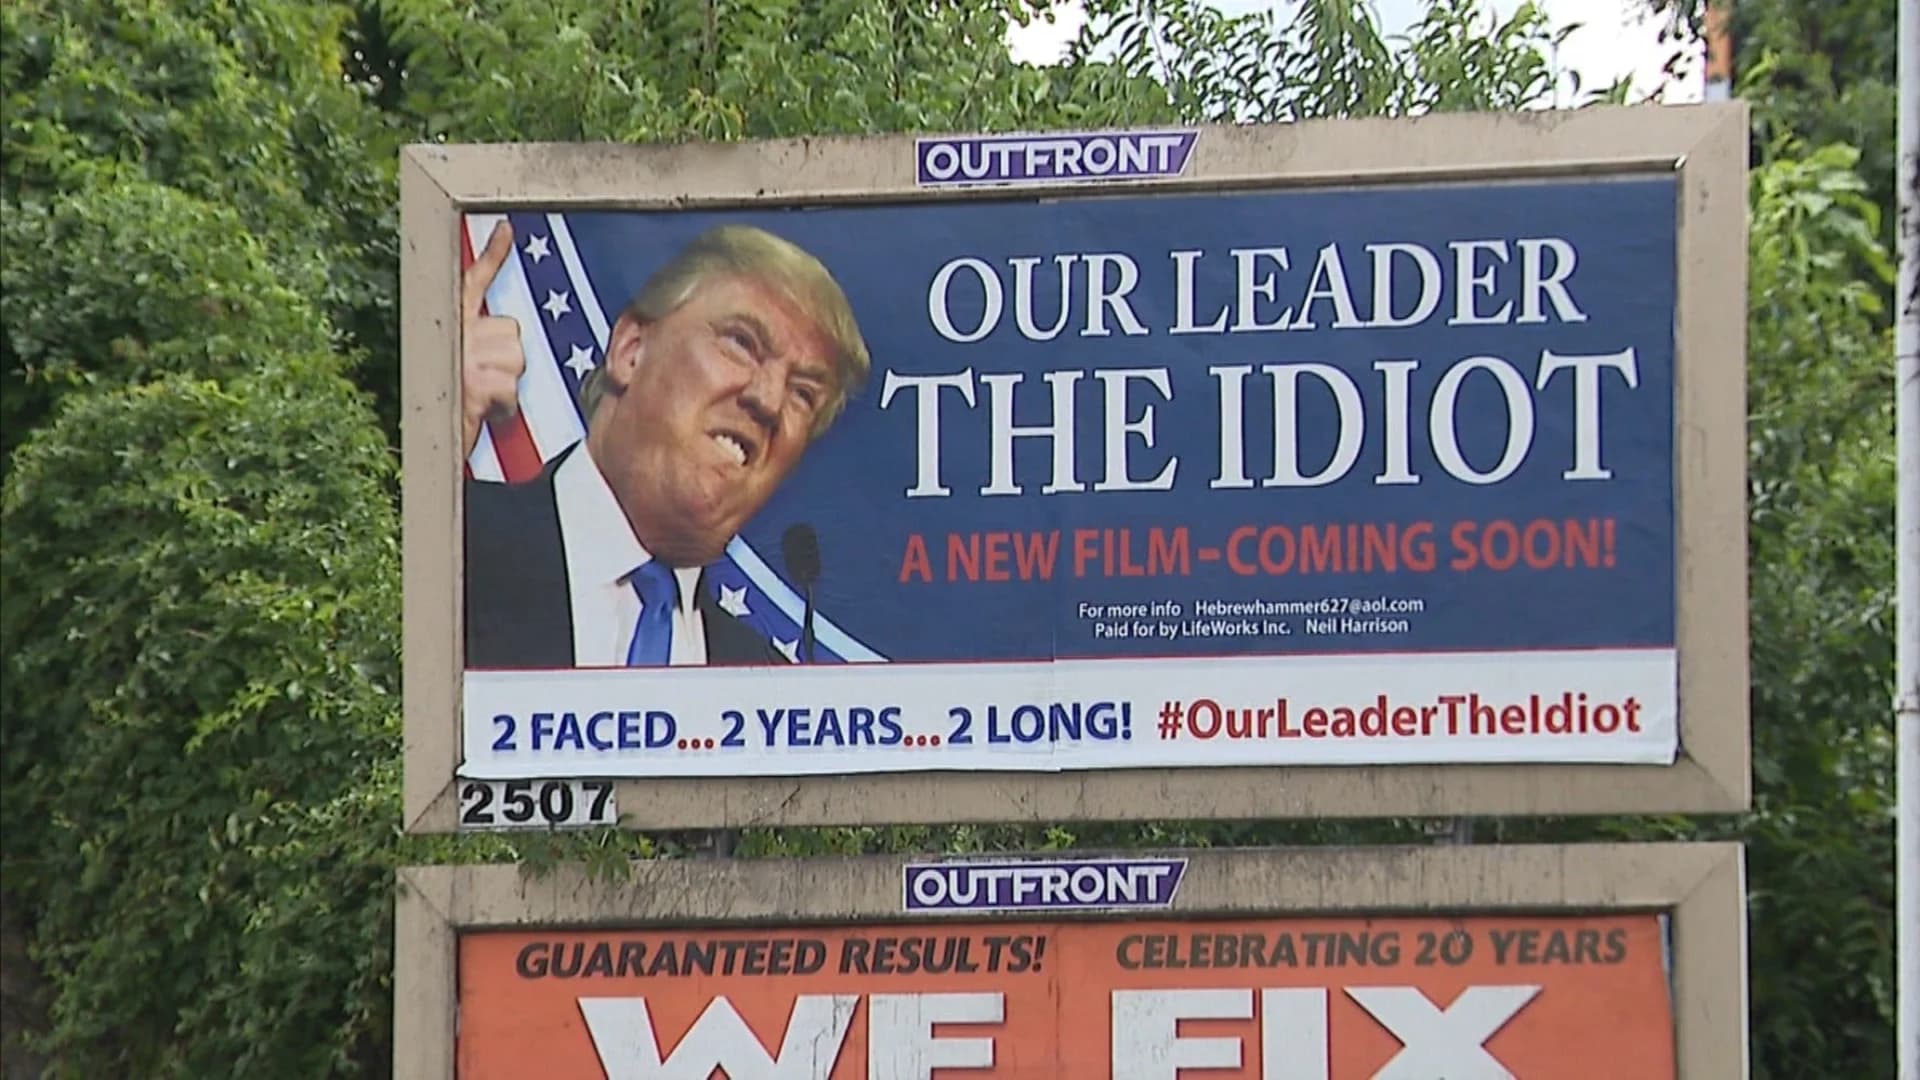 Officials: Township has no control over anti-Trump billboard